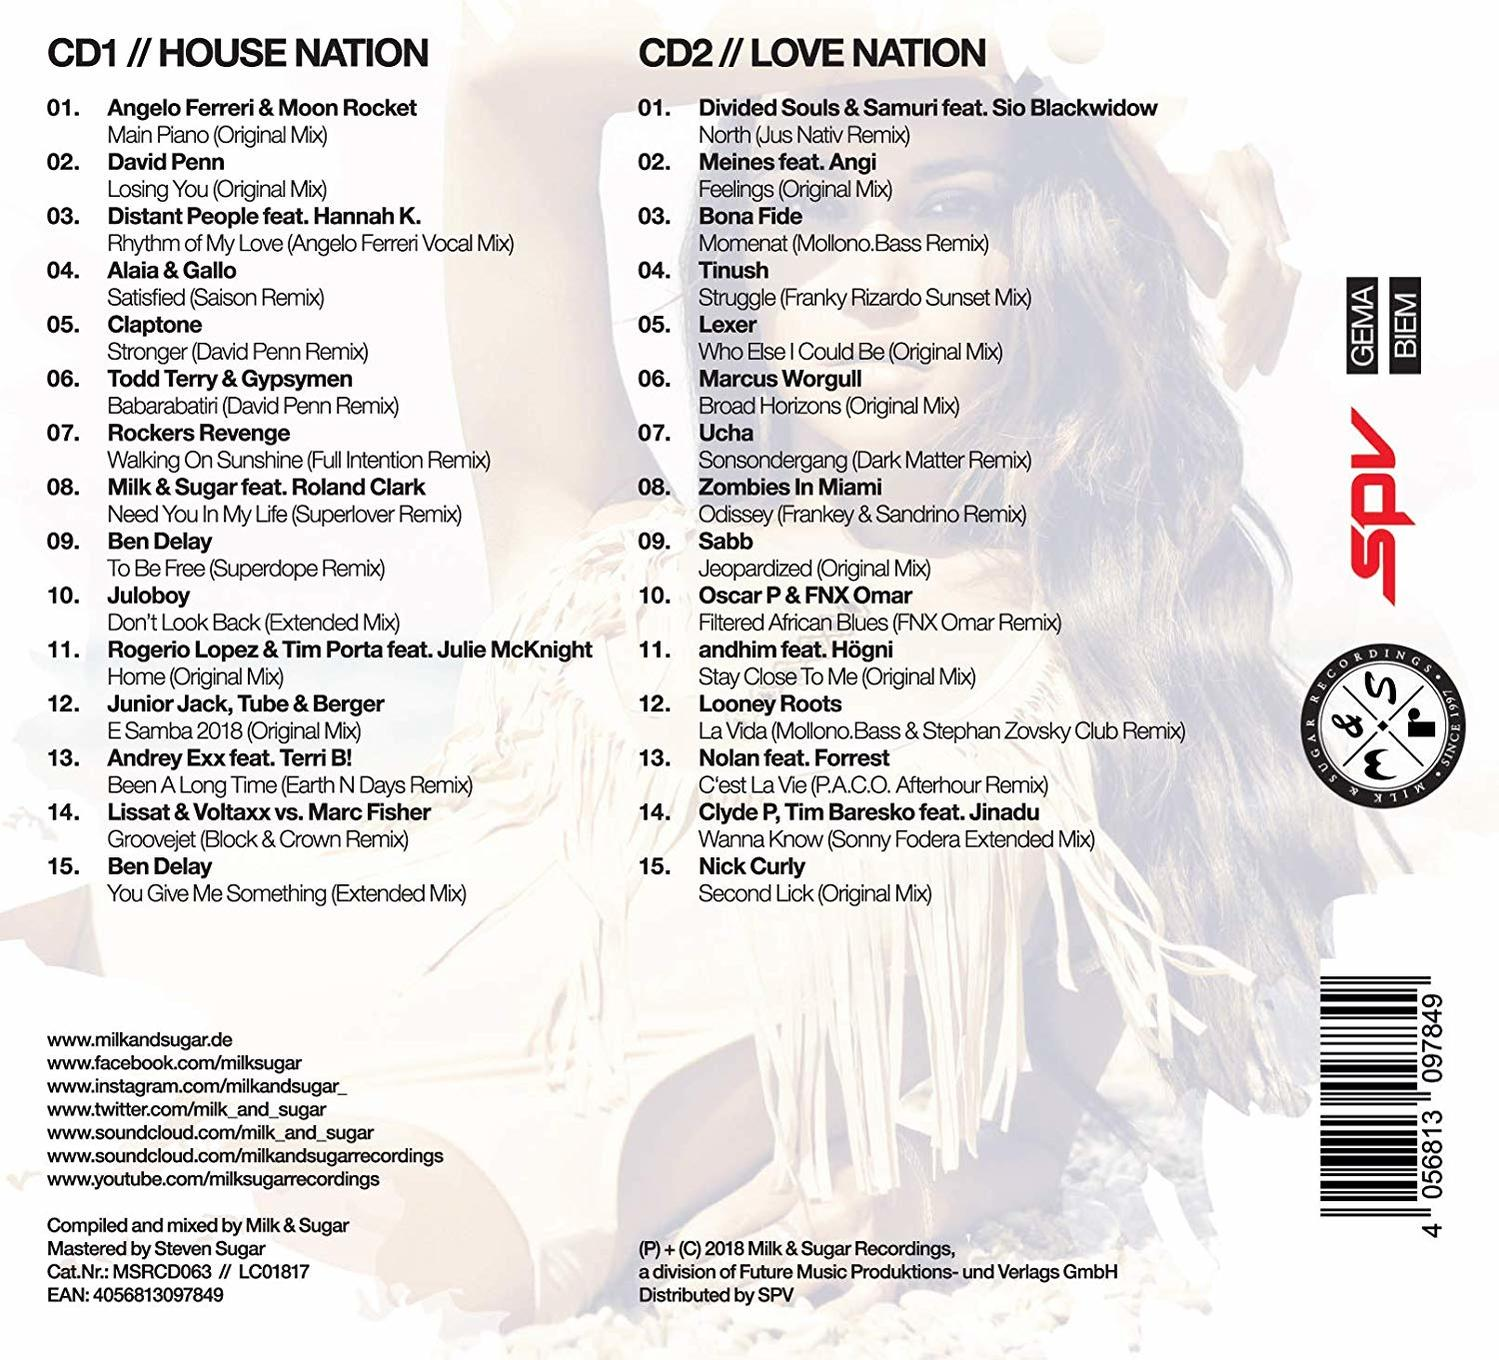 VARIOUS - Nation (CD) House - 2018 Ibiza